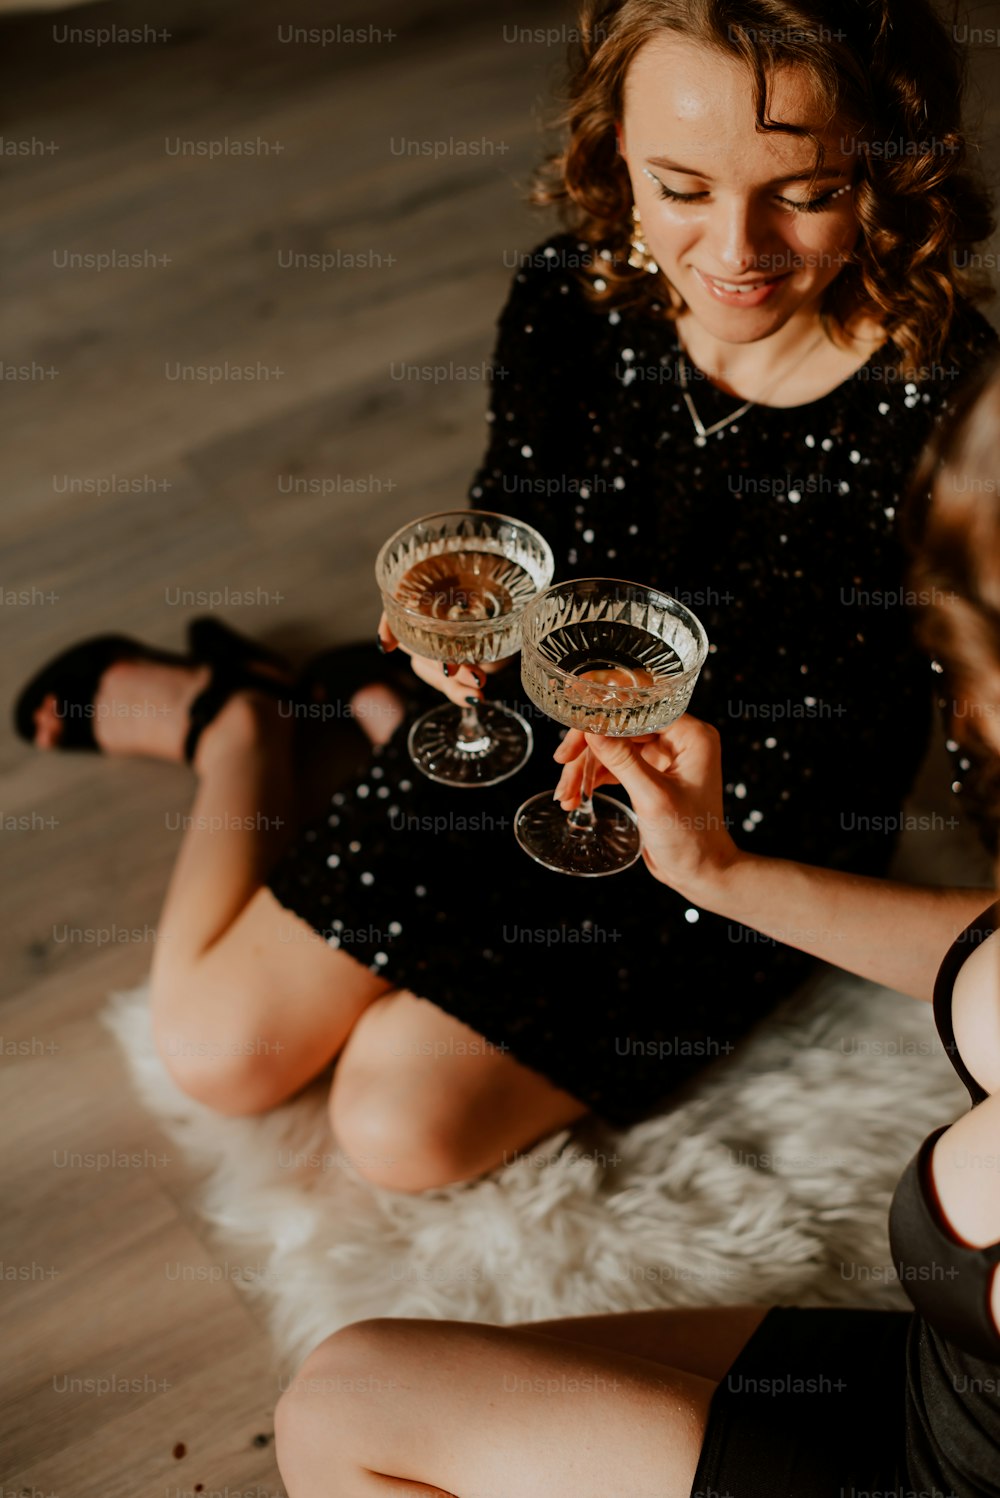 Eine Frau, die auf dem Boden sitzt und zwei Weingläser hält